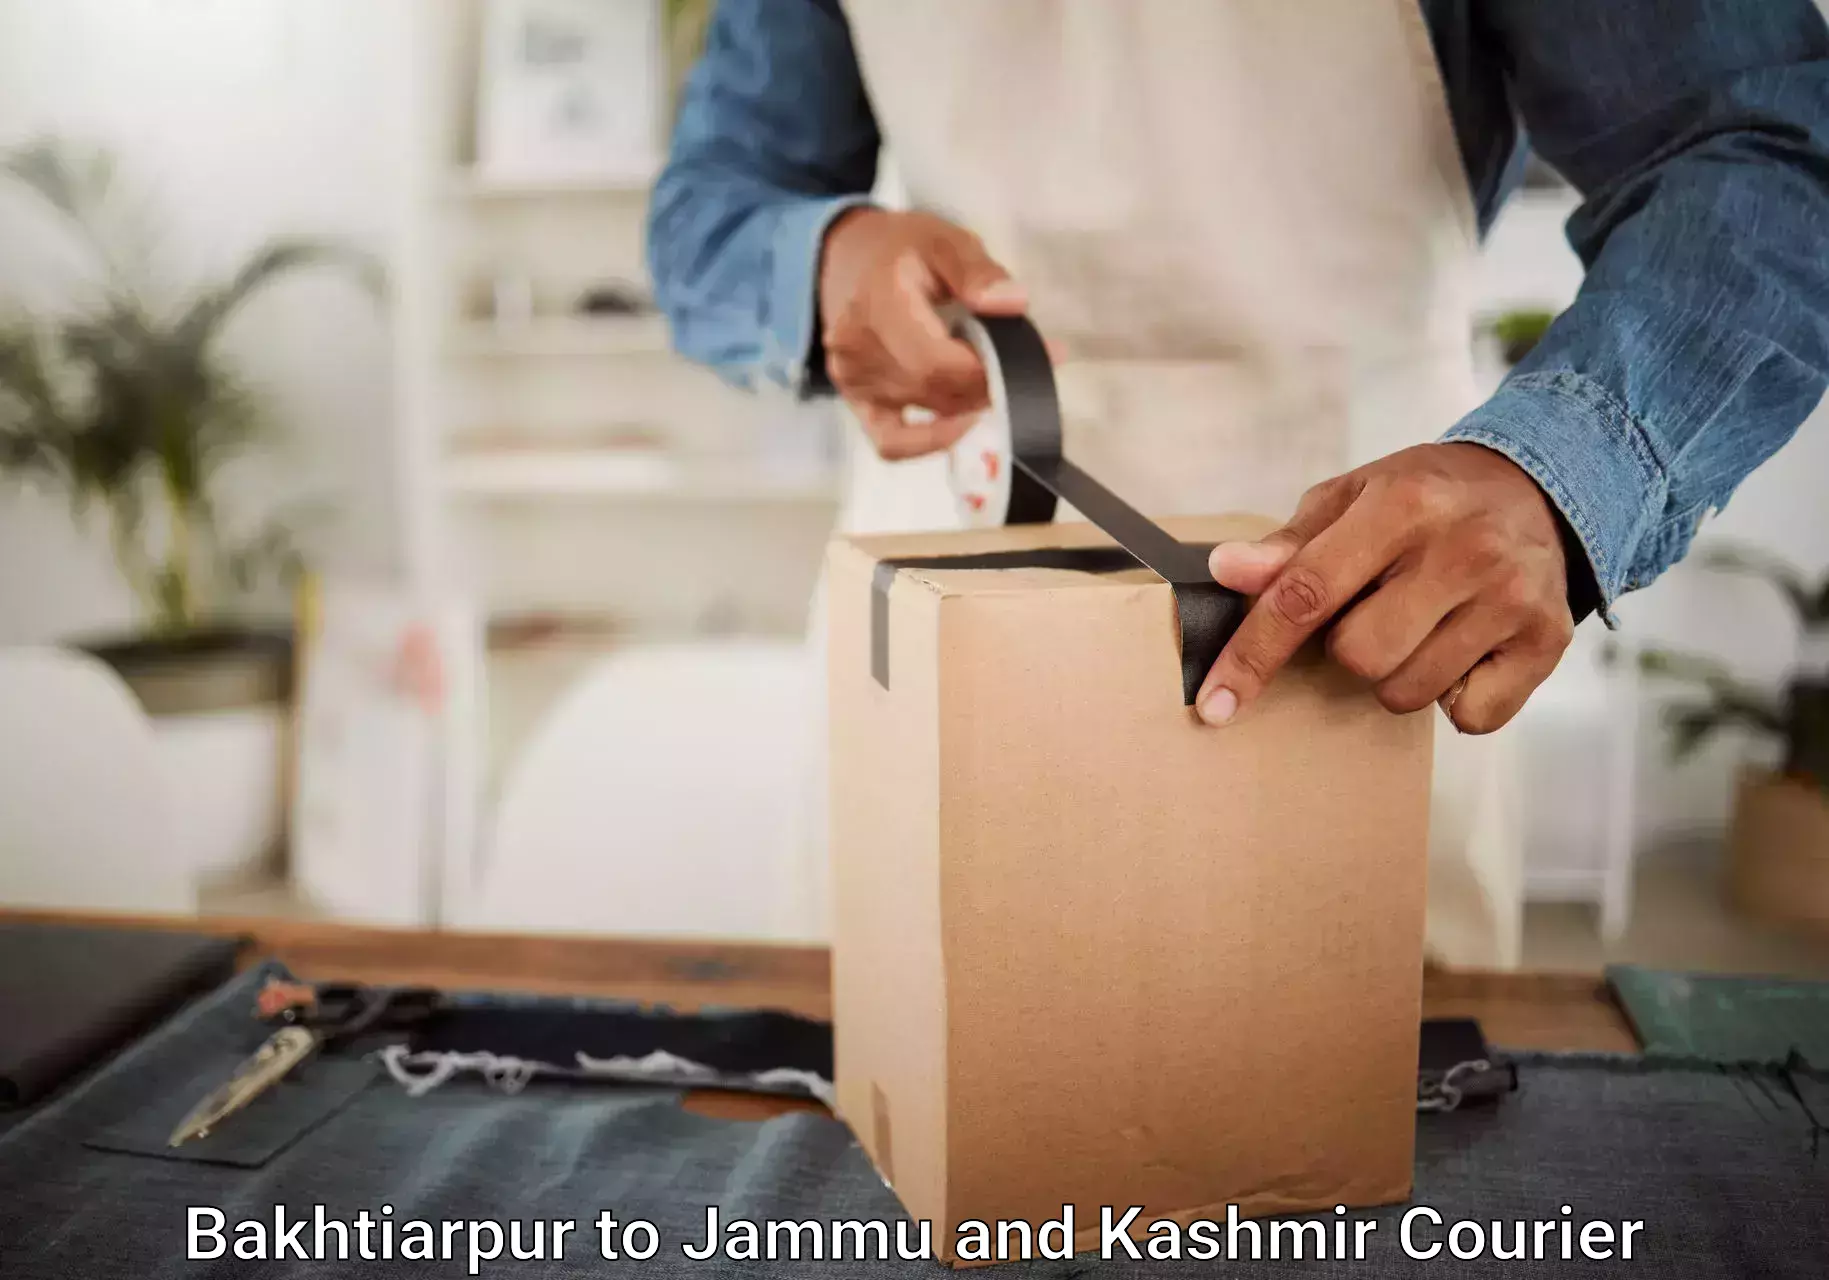 High-quality baggage shipment Bakhtiarpur to Jammu and Kashmir